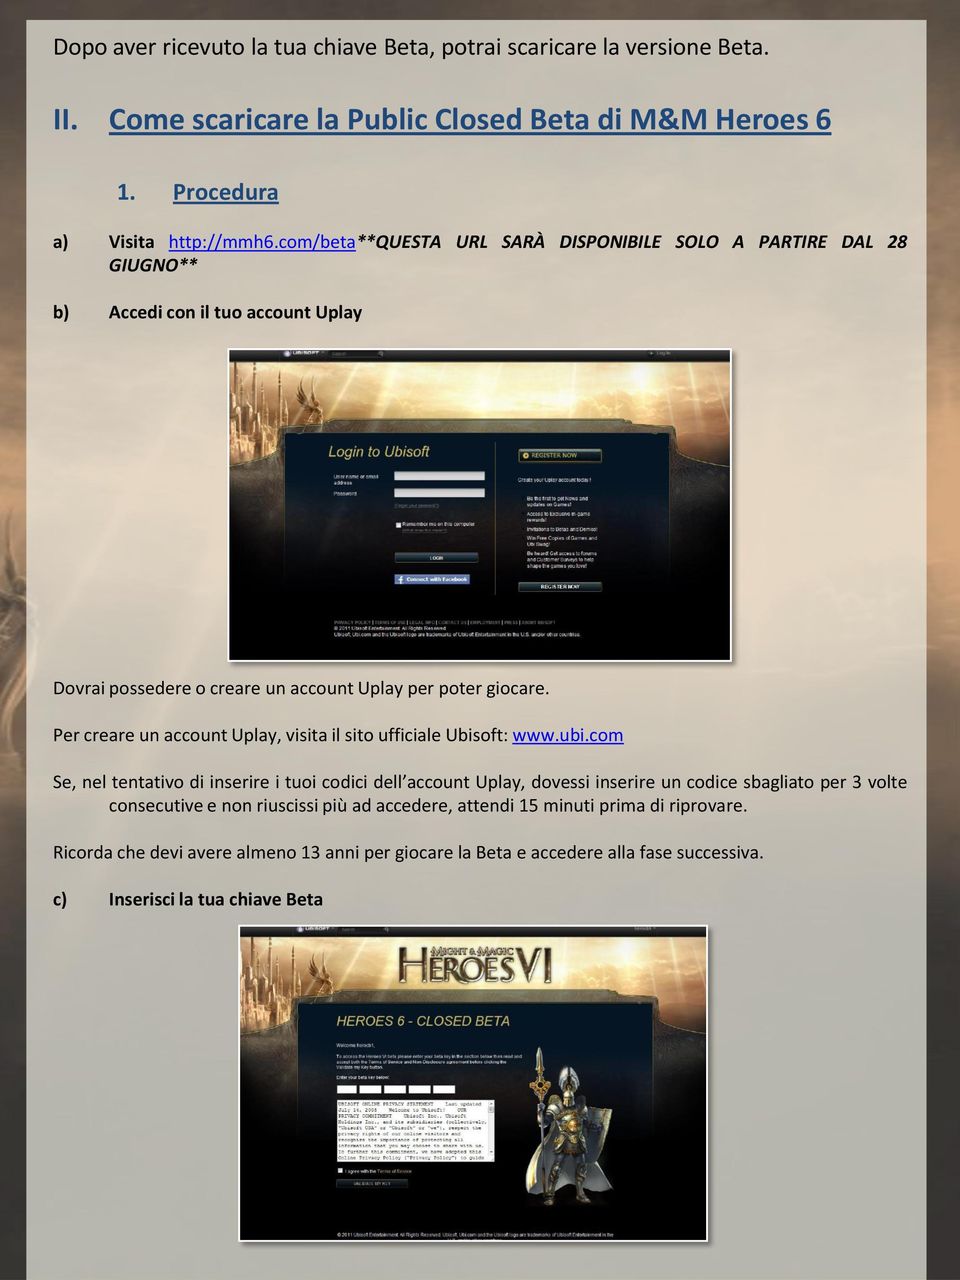 Per creare un account Uplay, visita il sito ufficiale Ubisoft: www.ubi.